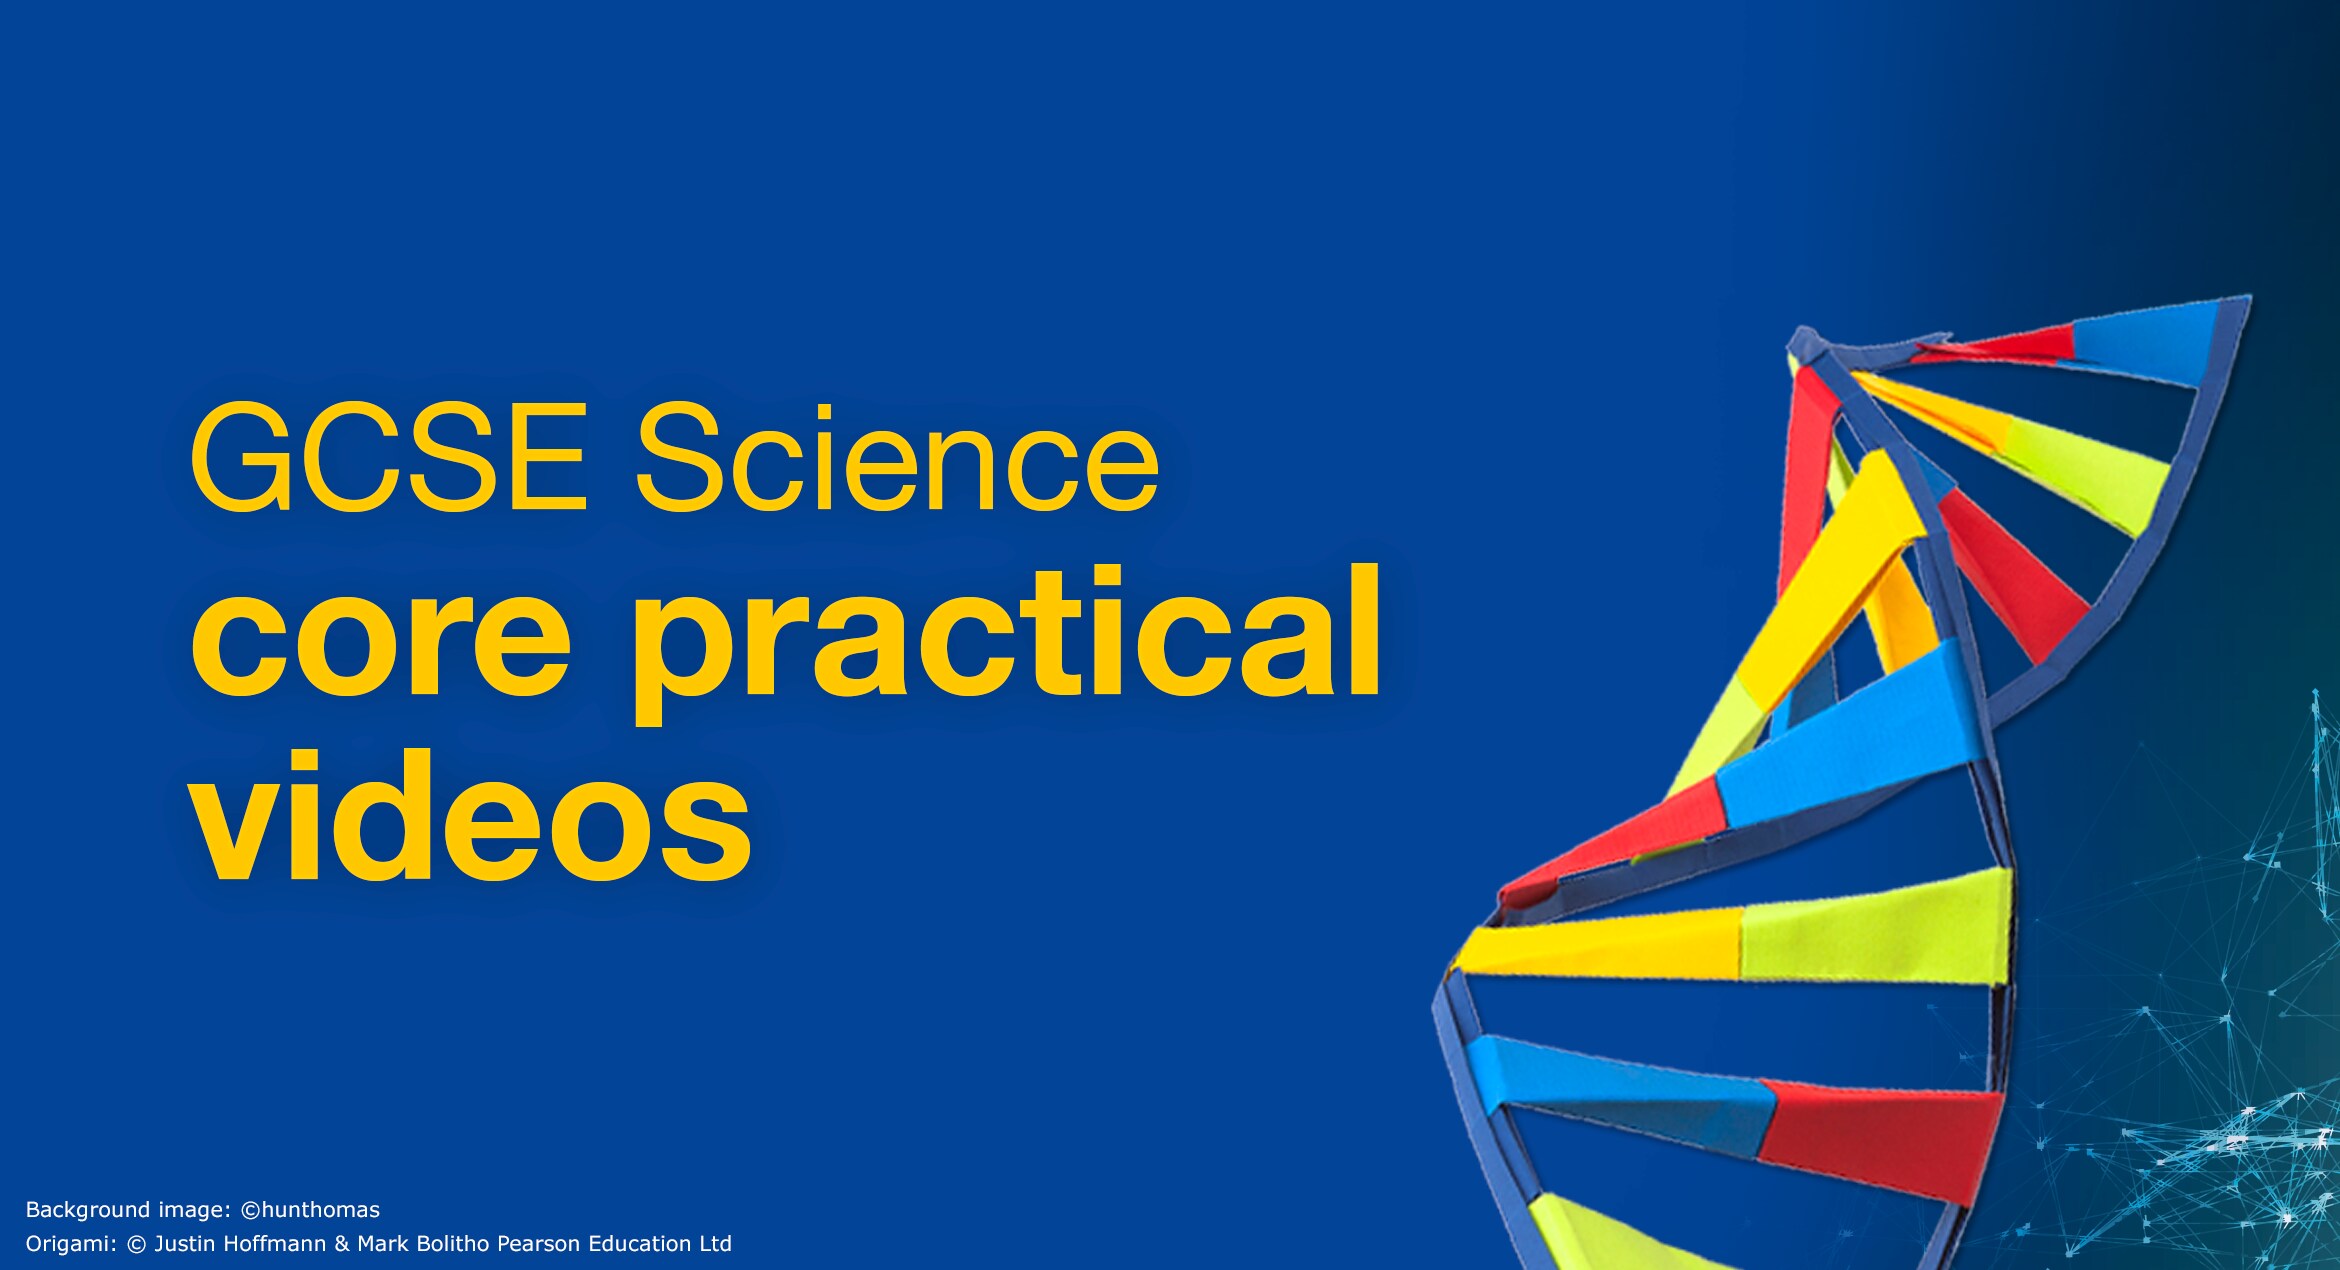 GCSE Science core practical videos